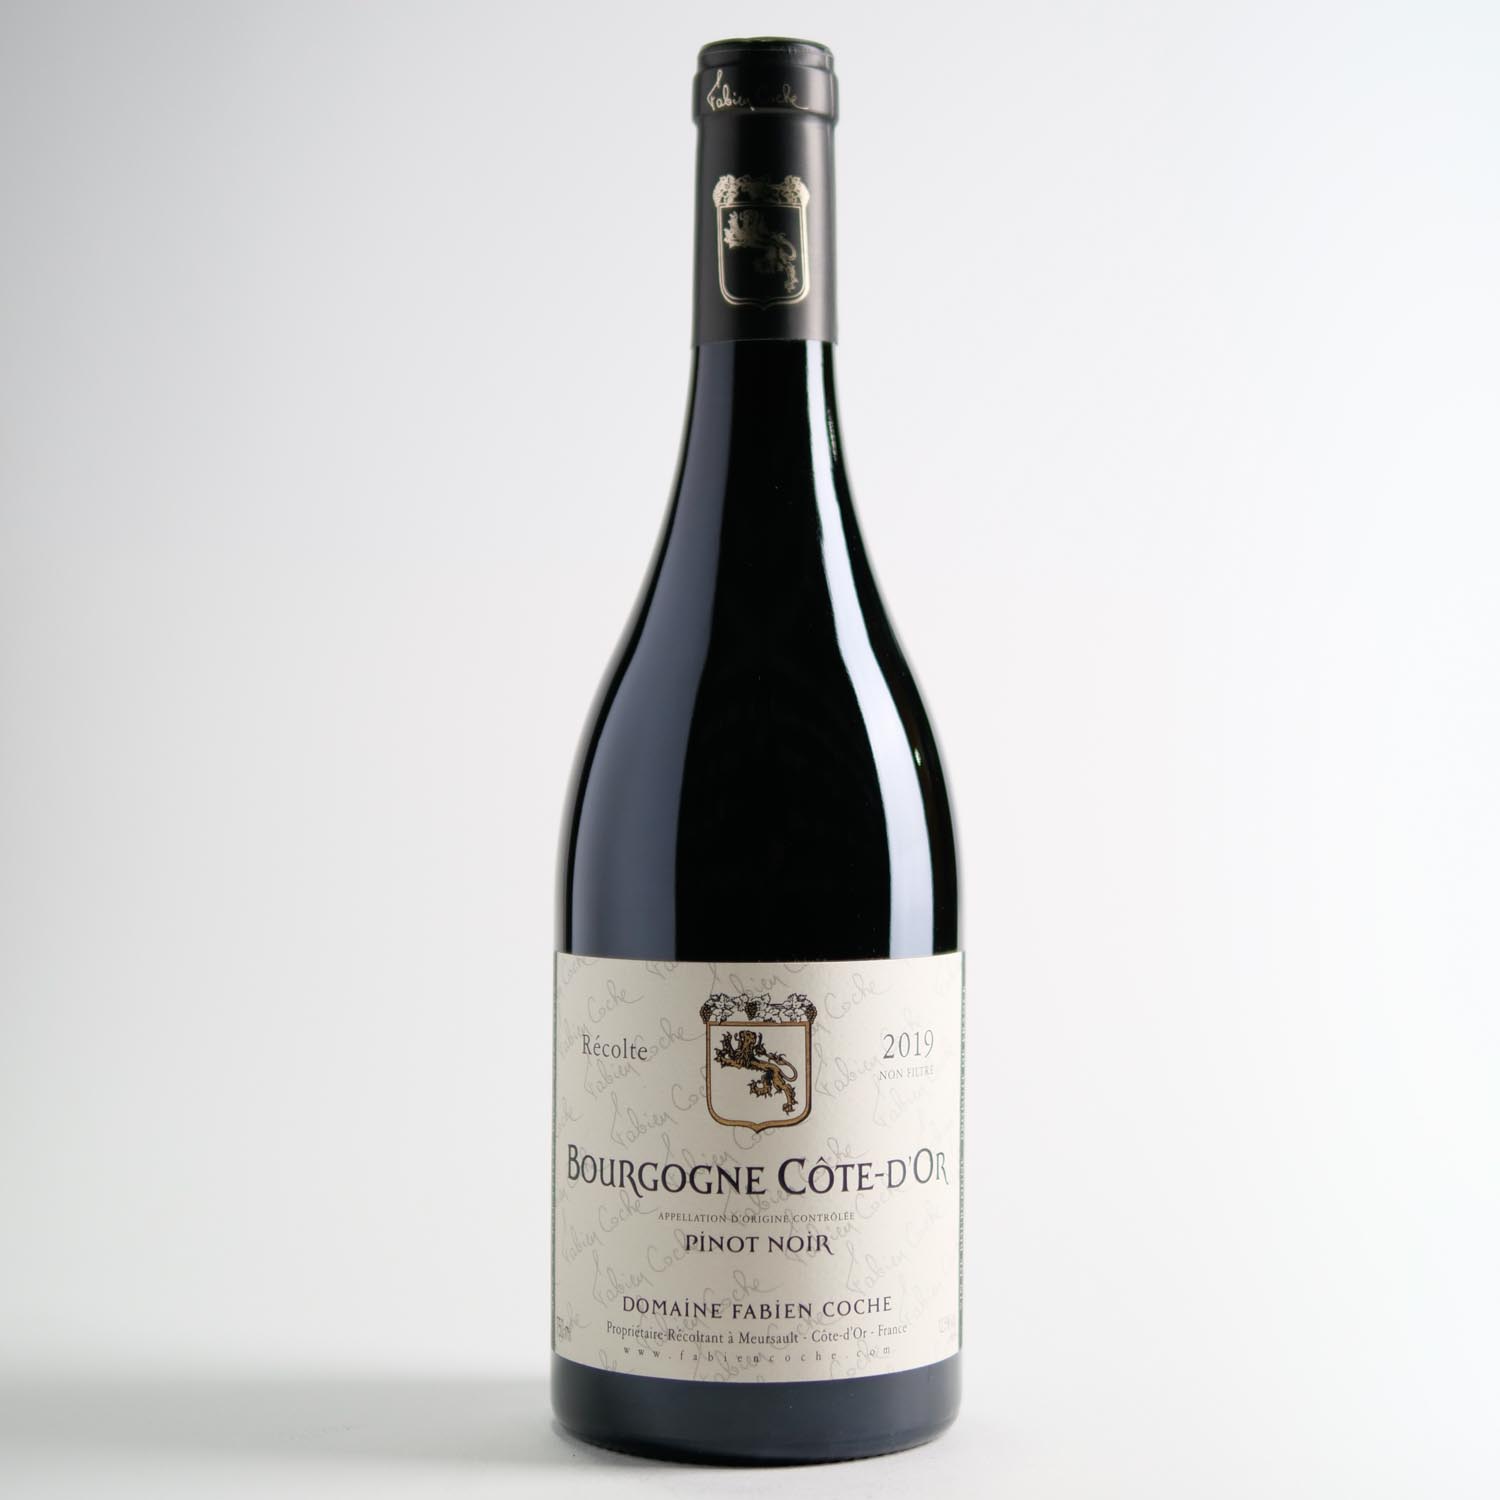 D Fabien Coche Bourgogne Cote D Pinot Noir 19